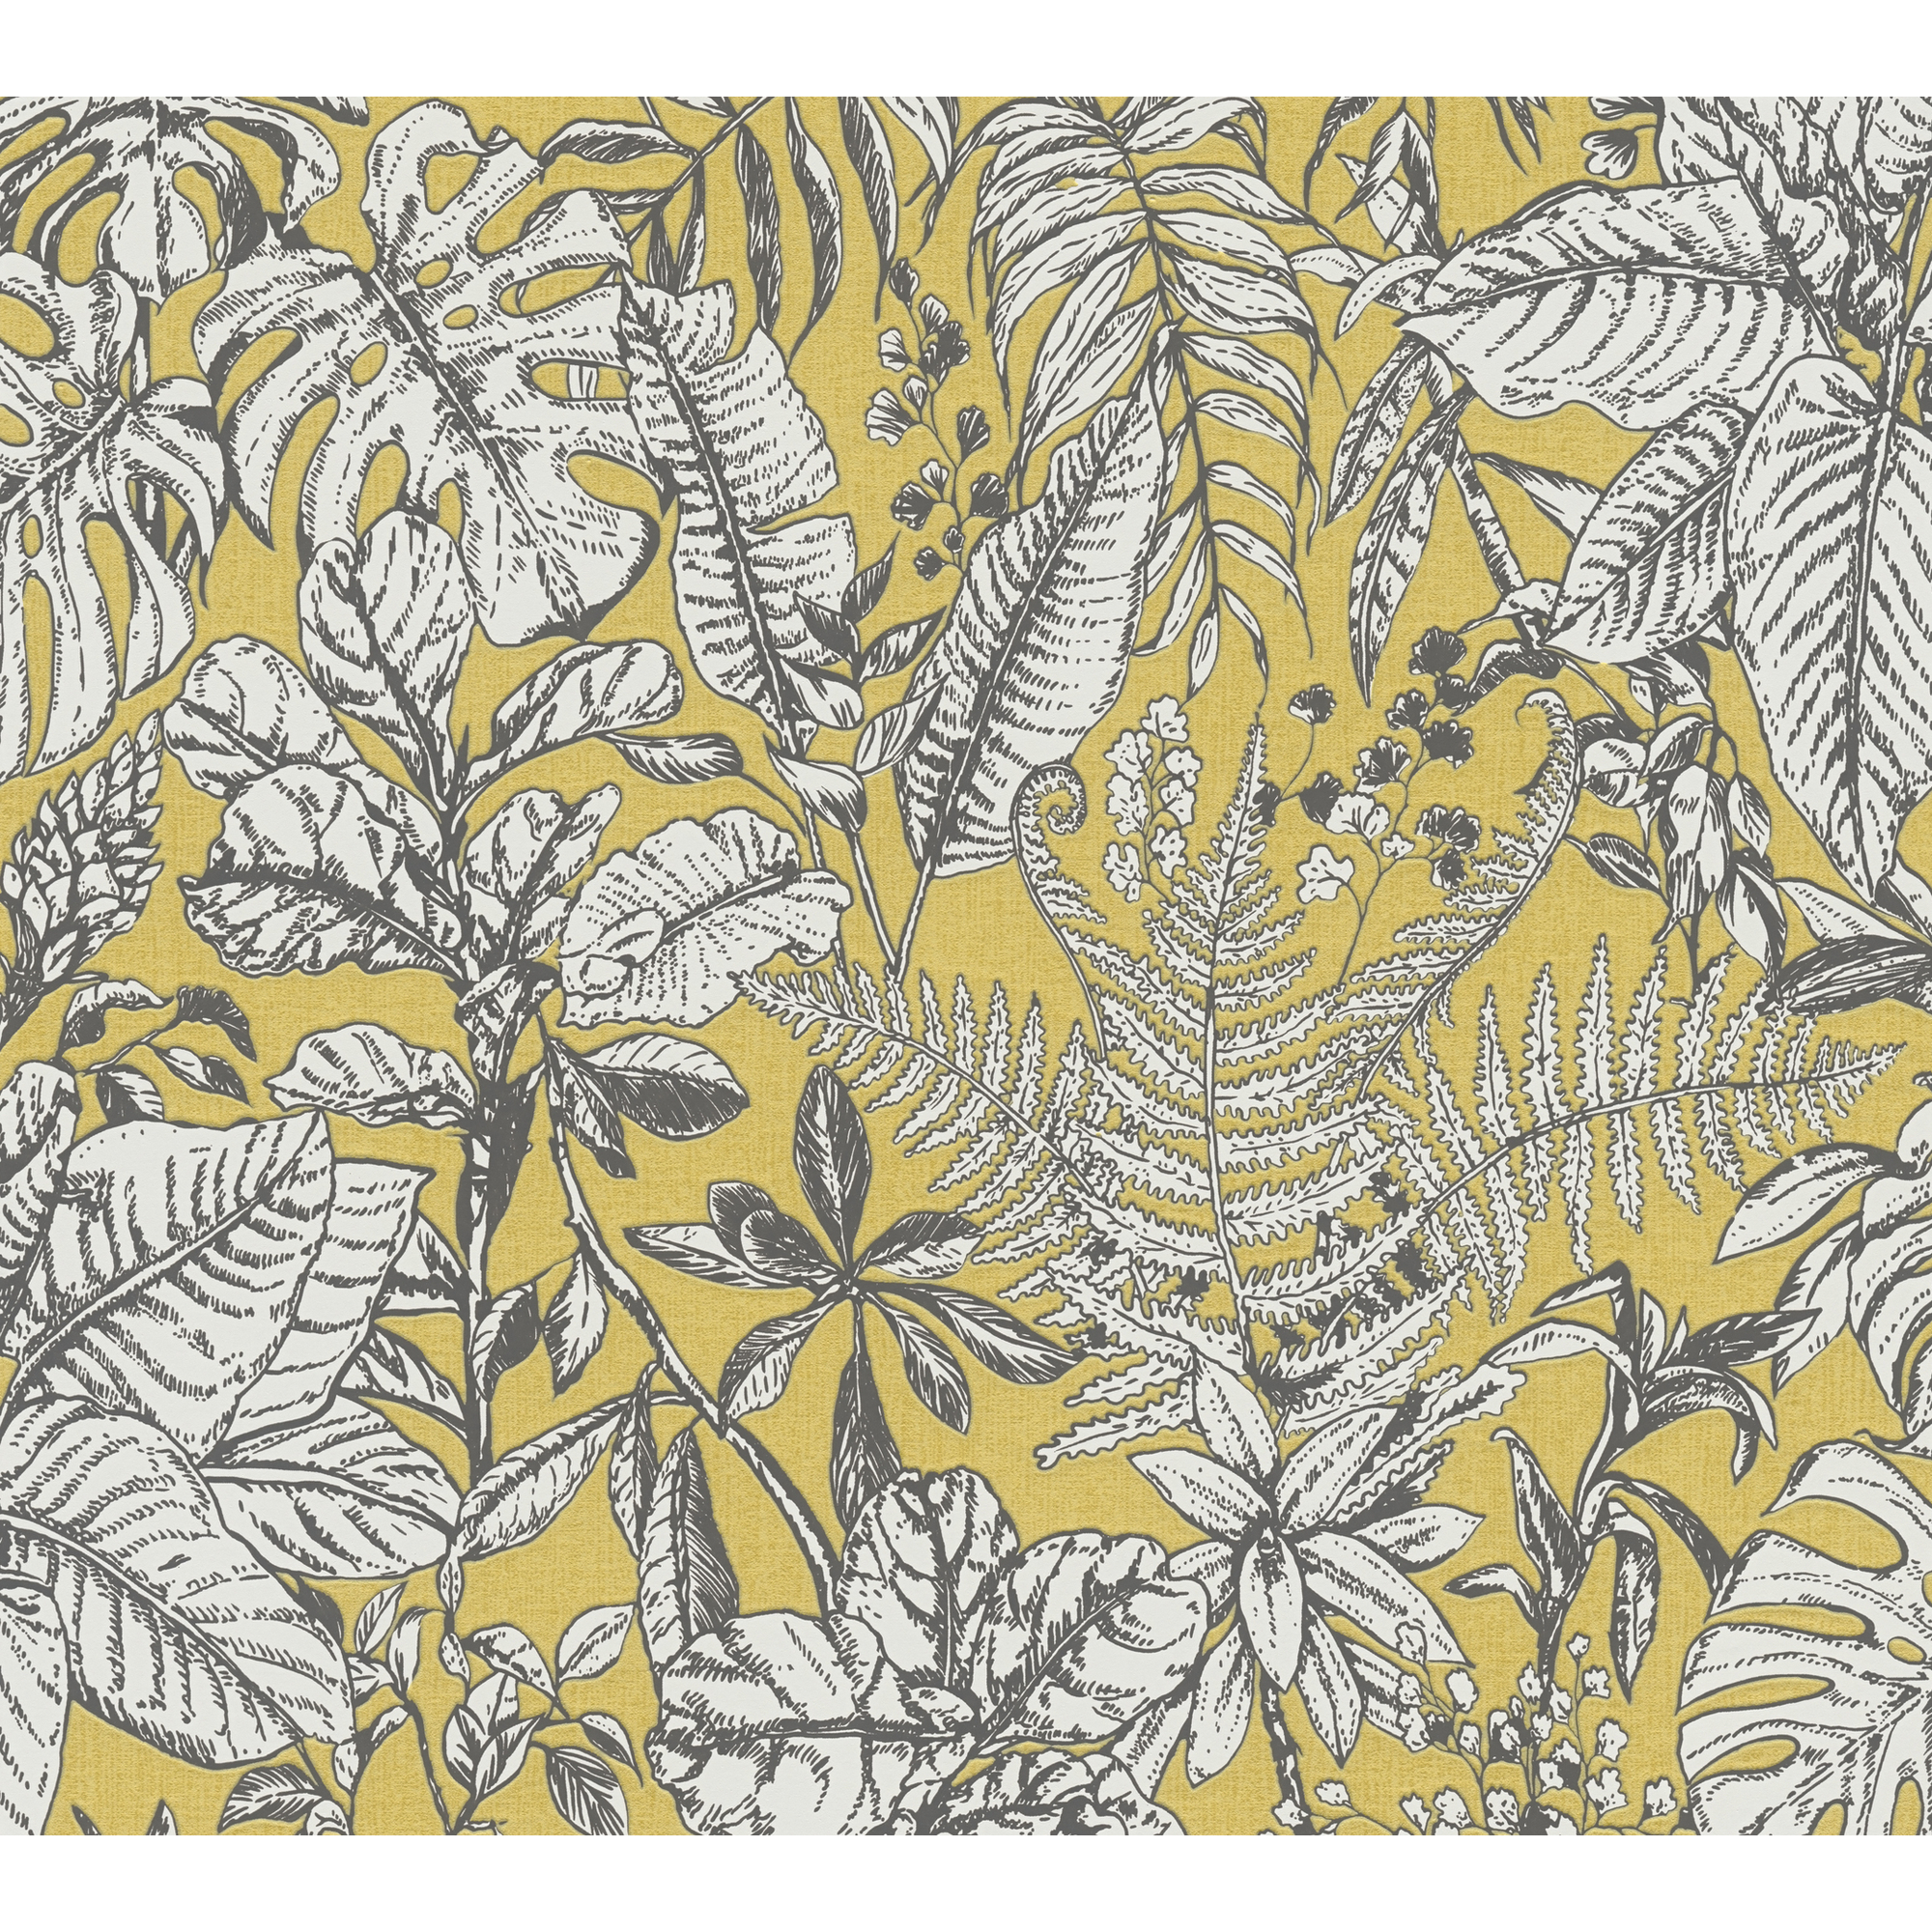 Vliestapete 'Daniel Hechter 6' Dschungel gelb/weiß 53 x 1005 cm + product picture